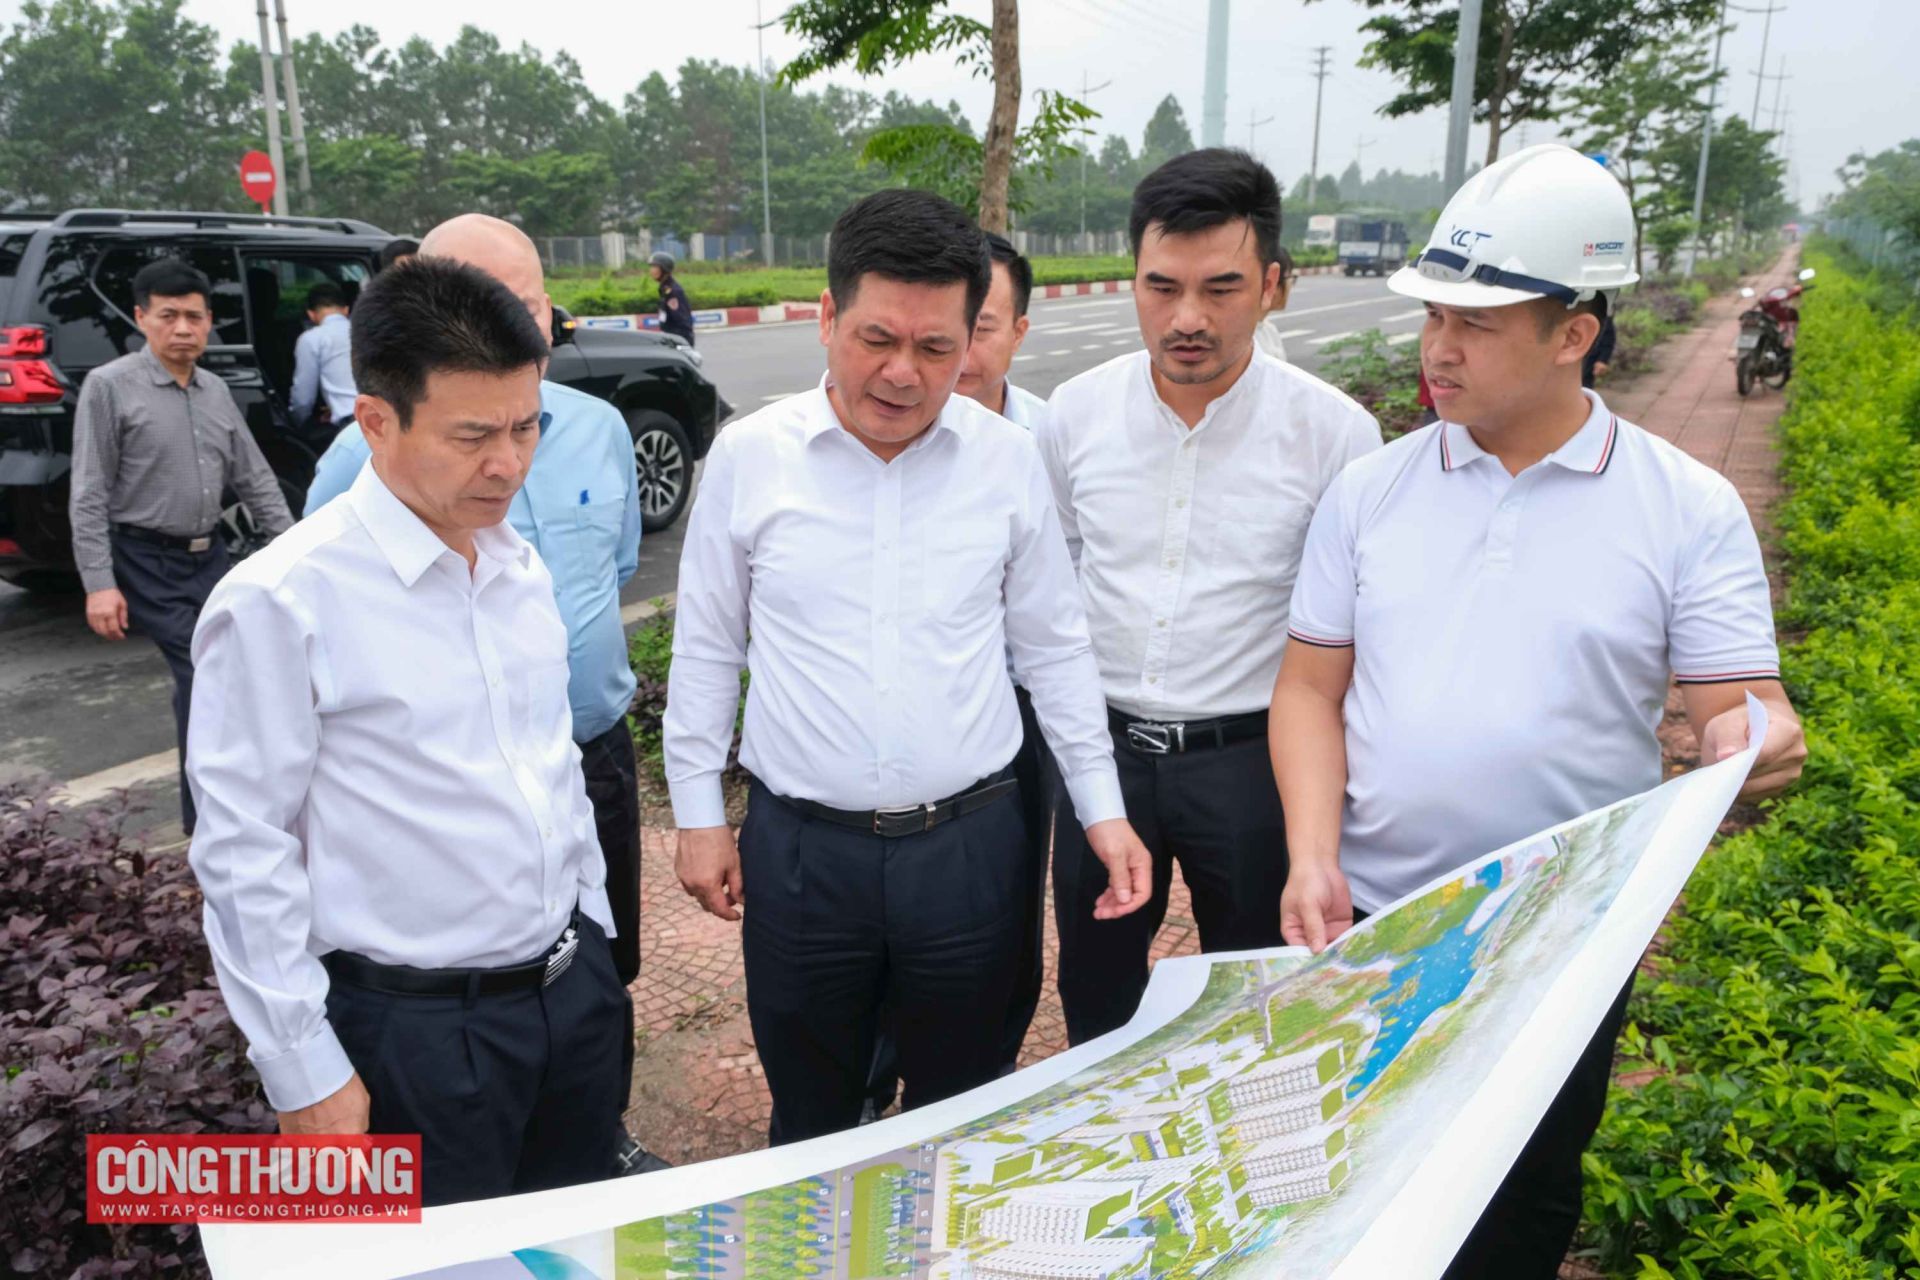 Cùng ngày, Bộ trưởng Nguyễn Hồng Diên và đoàn công tác của Chính phủ đã khảo sát thực tế 2 dự án công nghiệp và nhà ở xã hội tại tỉnh Vĩnh Phúc